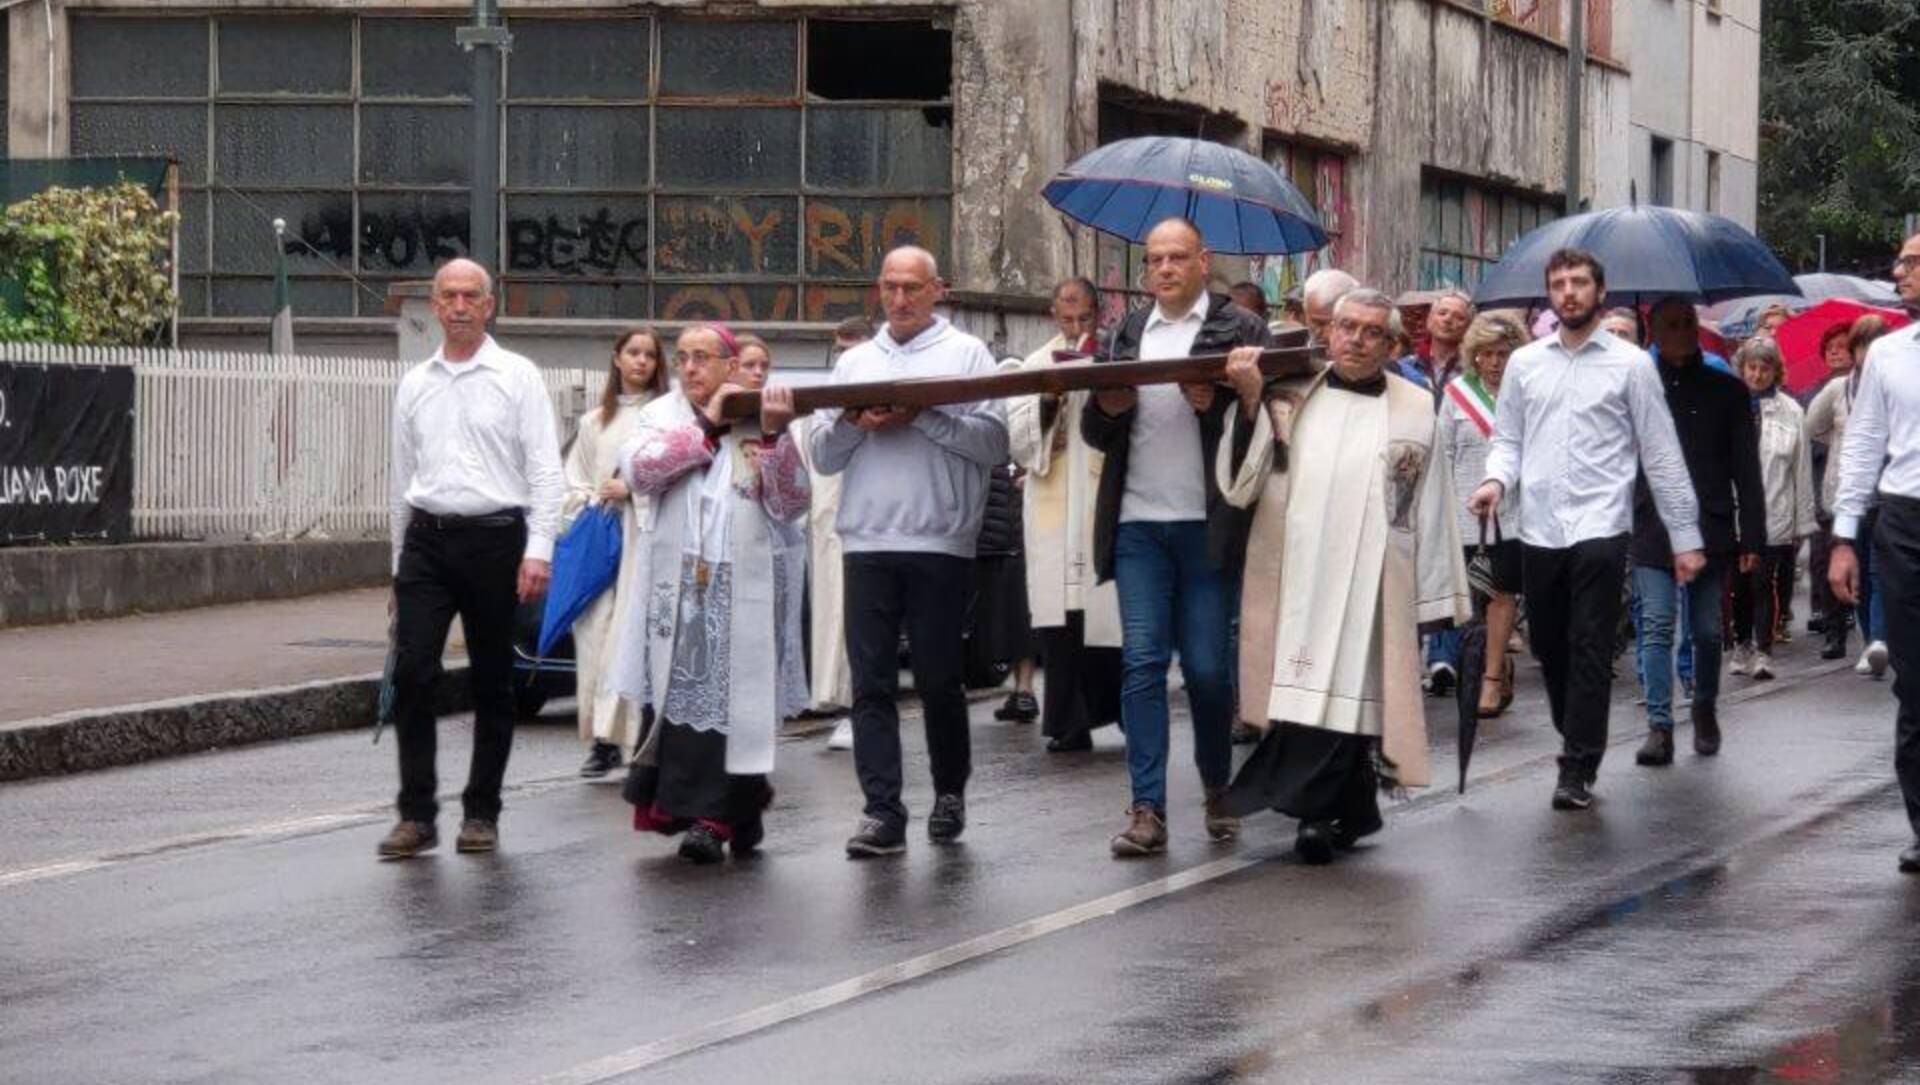 Santuario di Saronno gremito dai fedeli arrivati in processione con l’arcivescovo Delpini